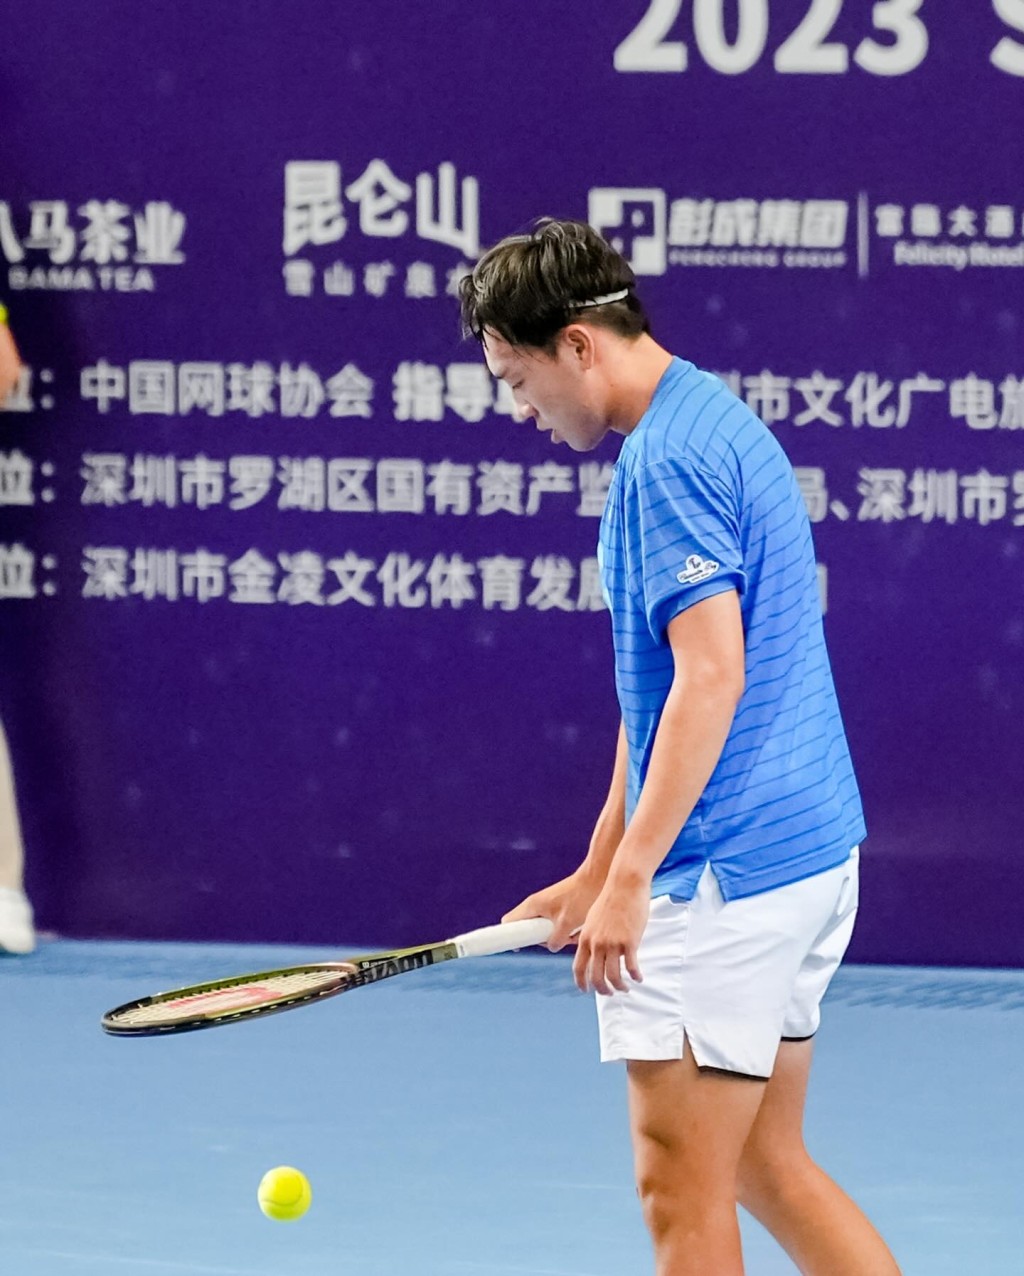 黄泽林打入ATP 深圳网球挑战赛决赛。facebook图片